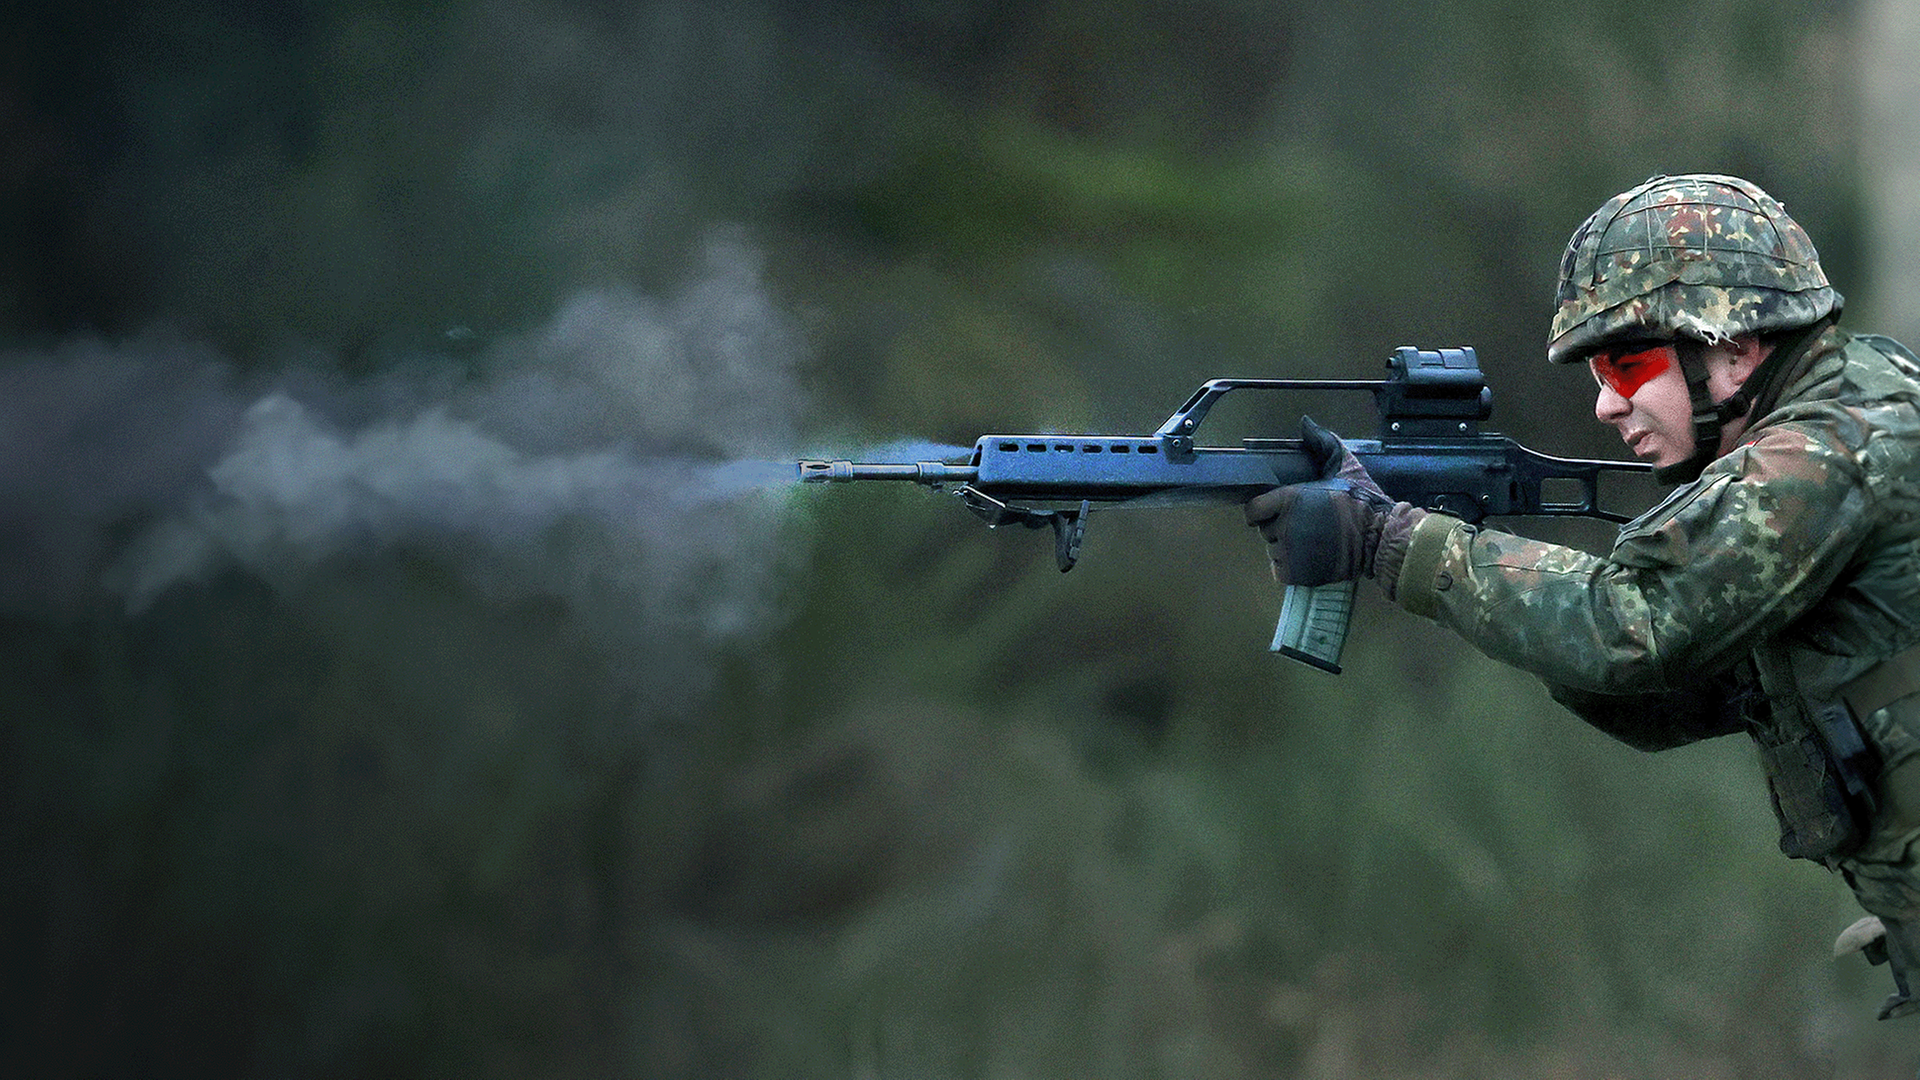 Soldat mit Schusswaffe bei Schießübung